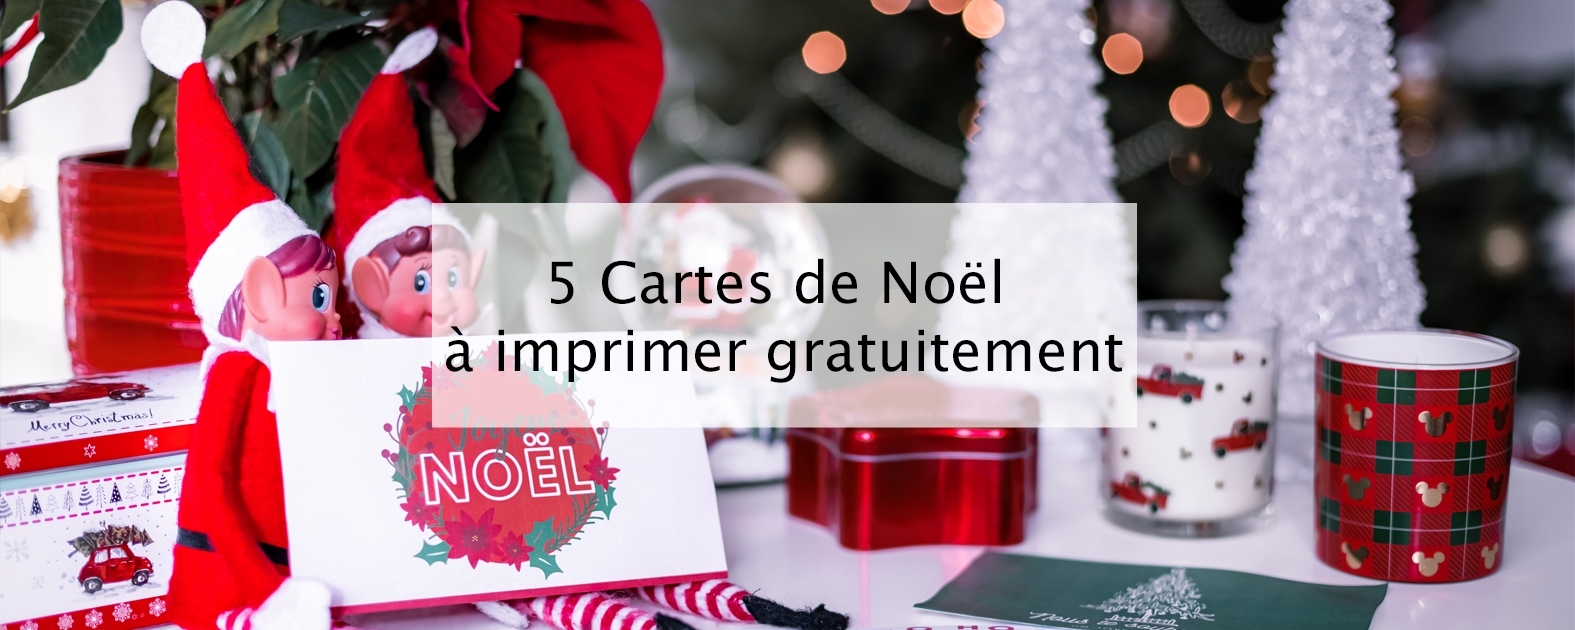 5 Cartes De Noel A Imprimer Gratuitement Blog Lifestyle Bordeaux